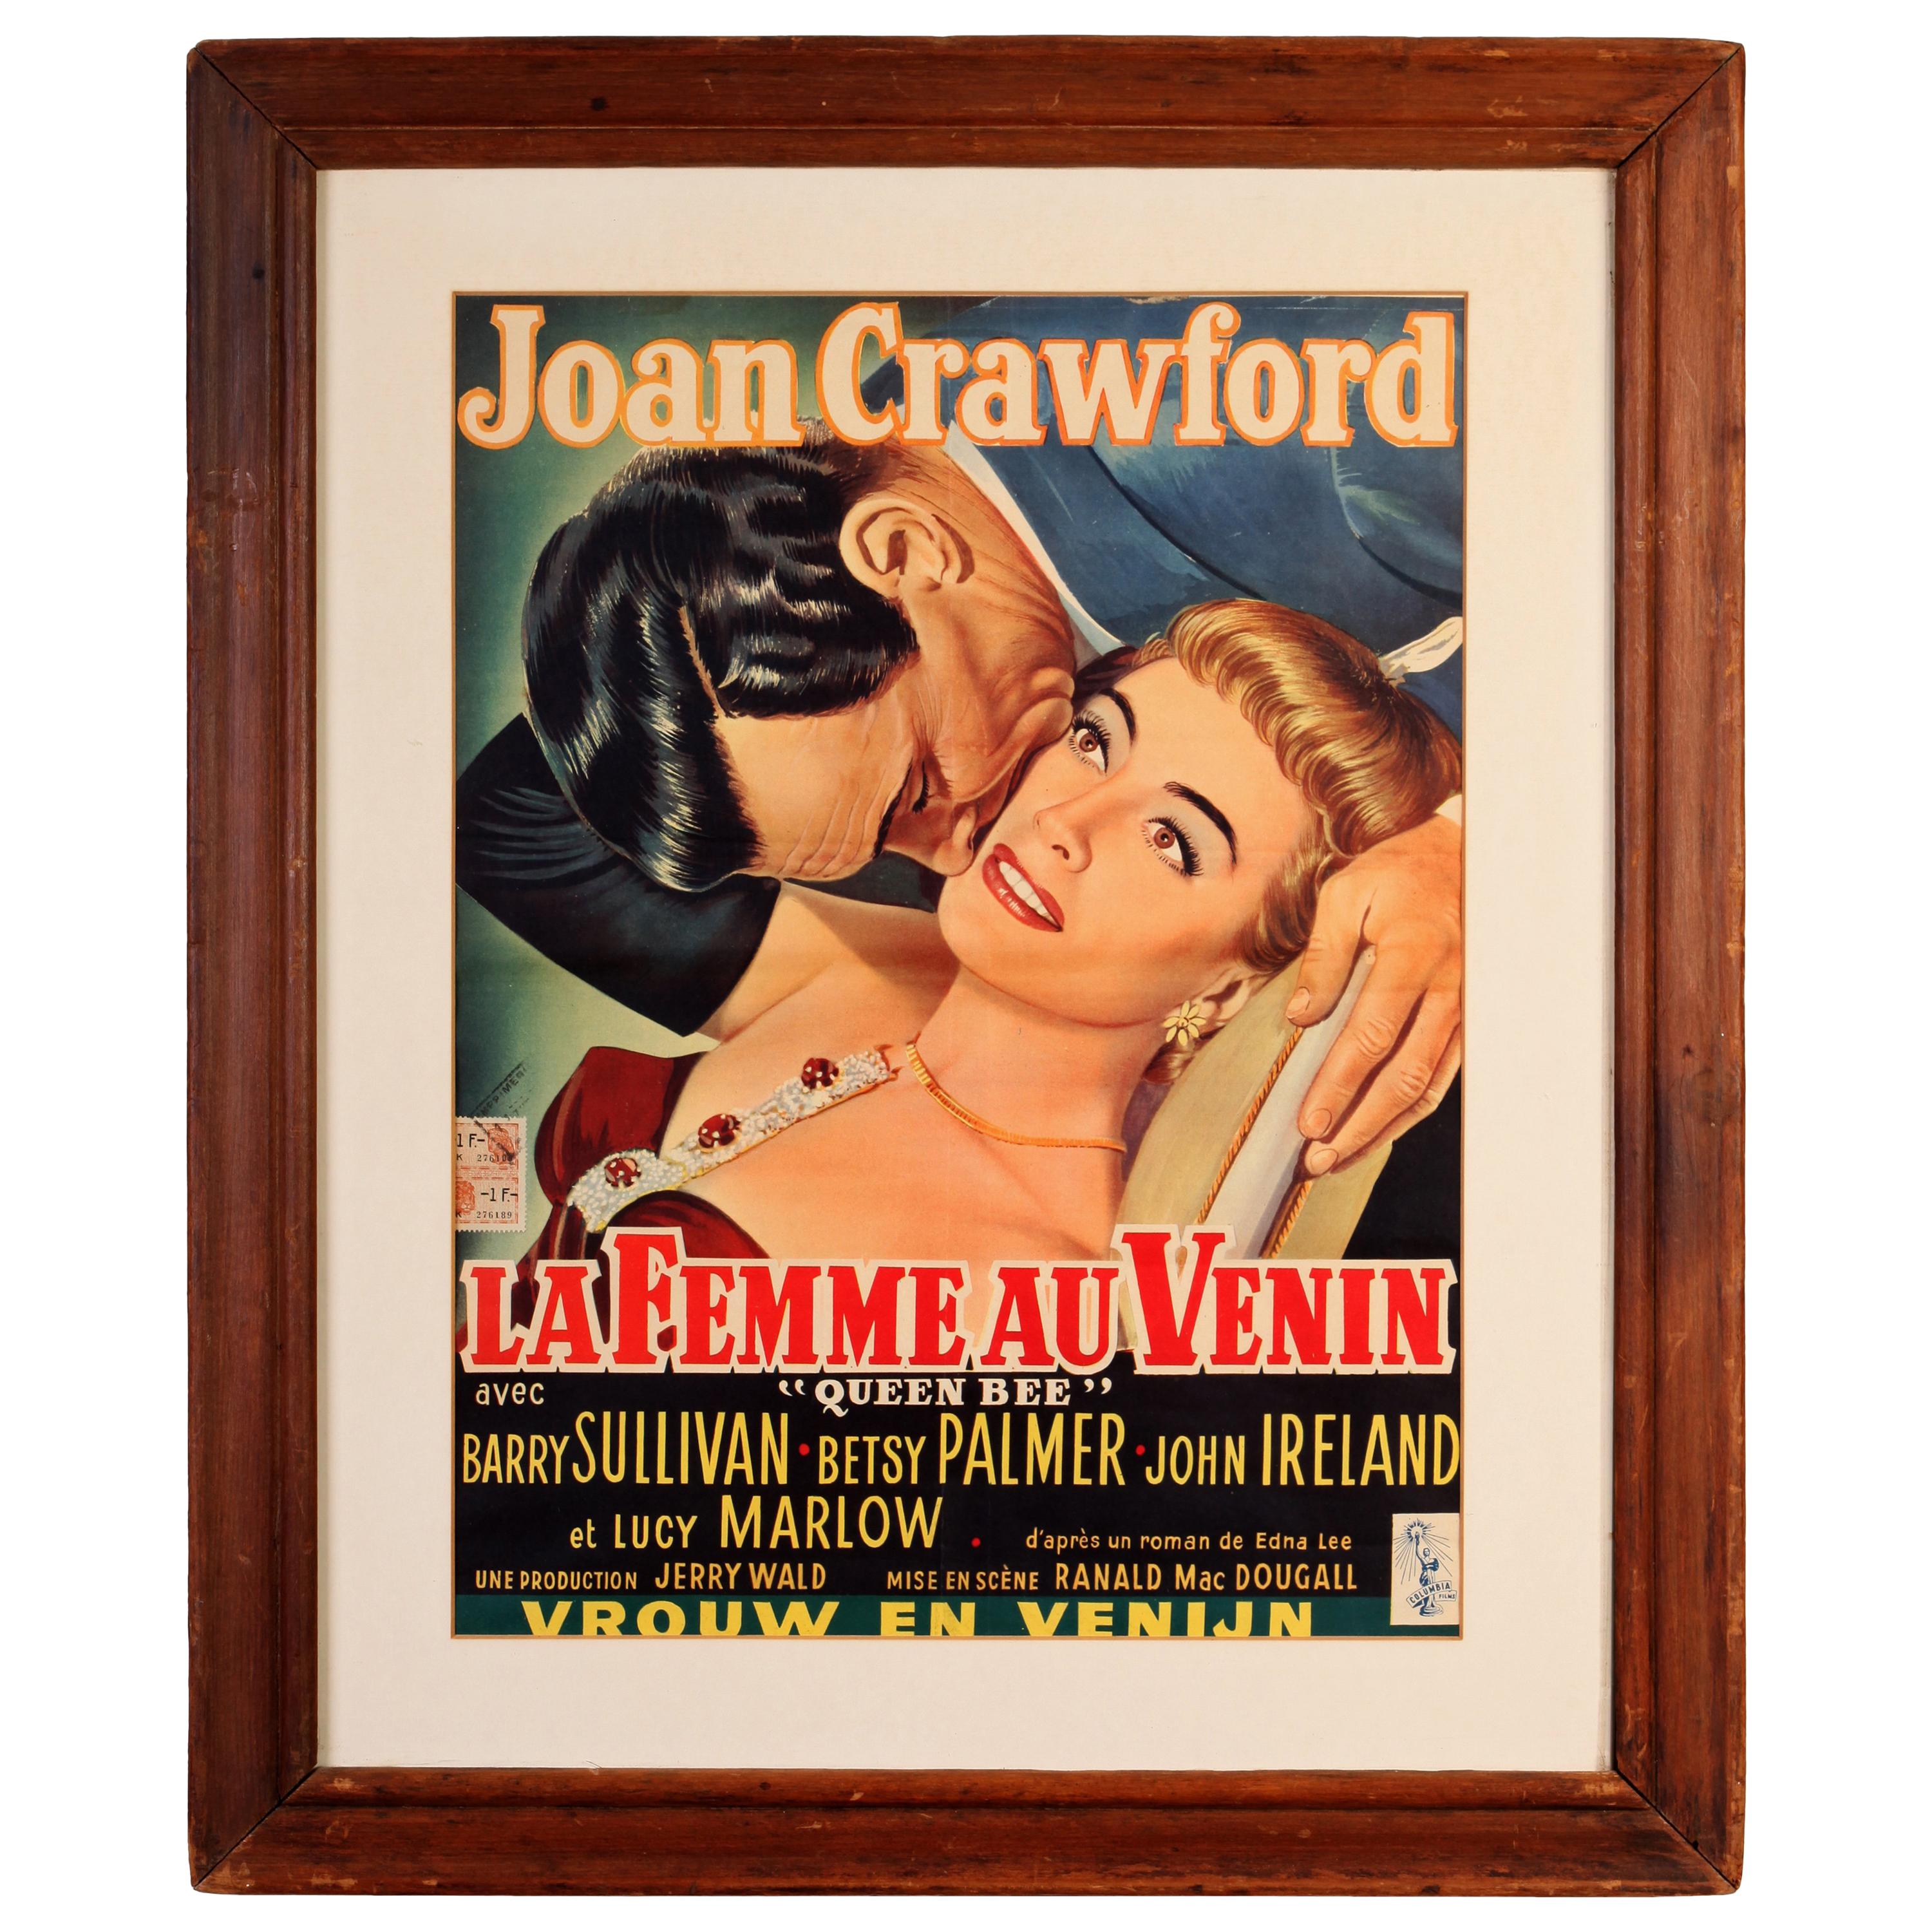 Joan Crawford and Ingrid Bergman Vintage Movie Posters, Queen Bee and Intermezzo